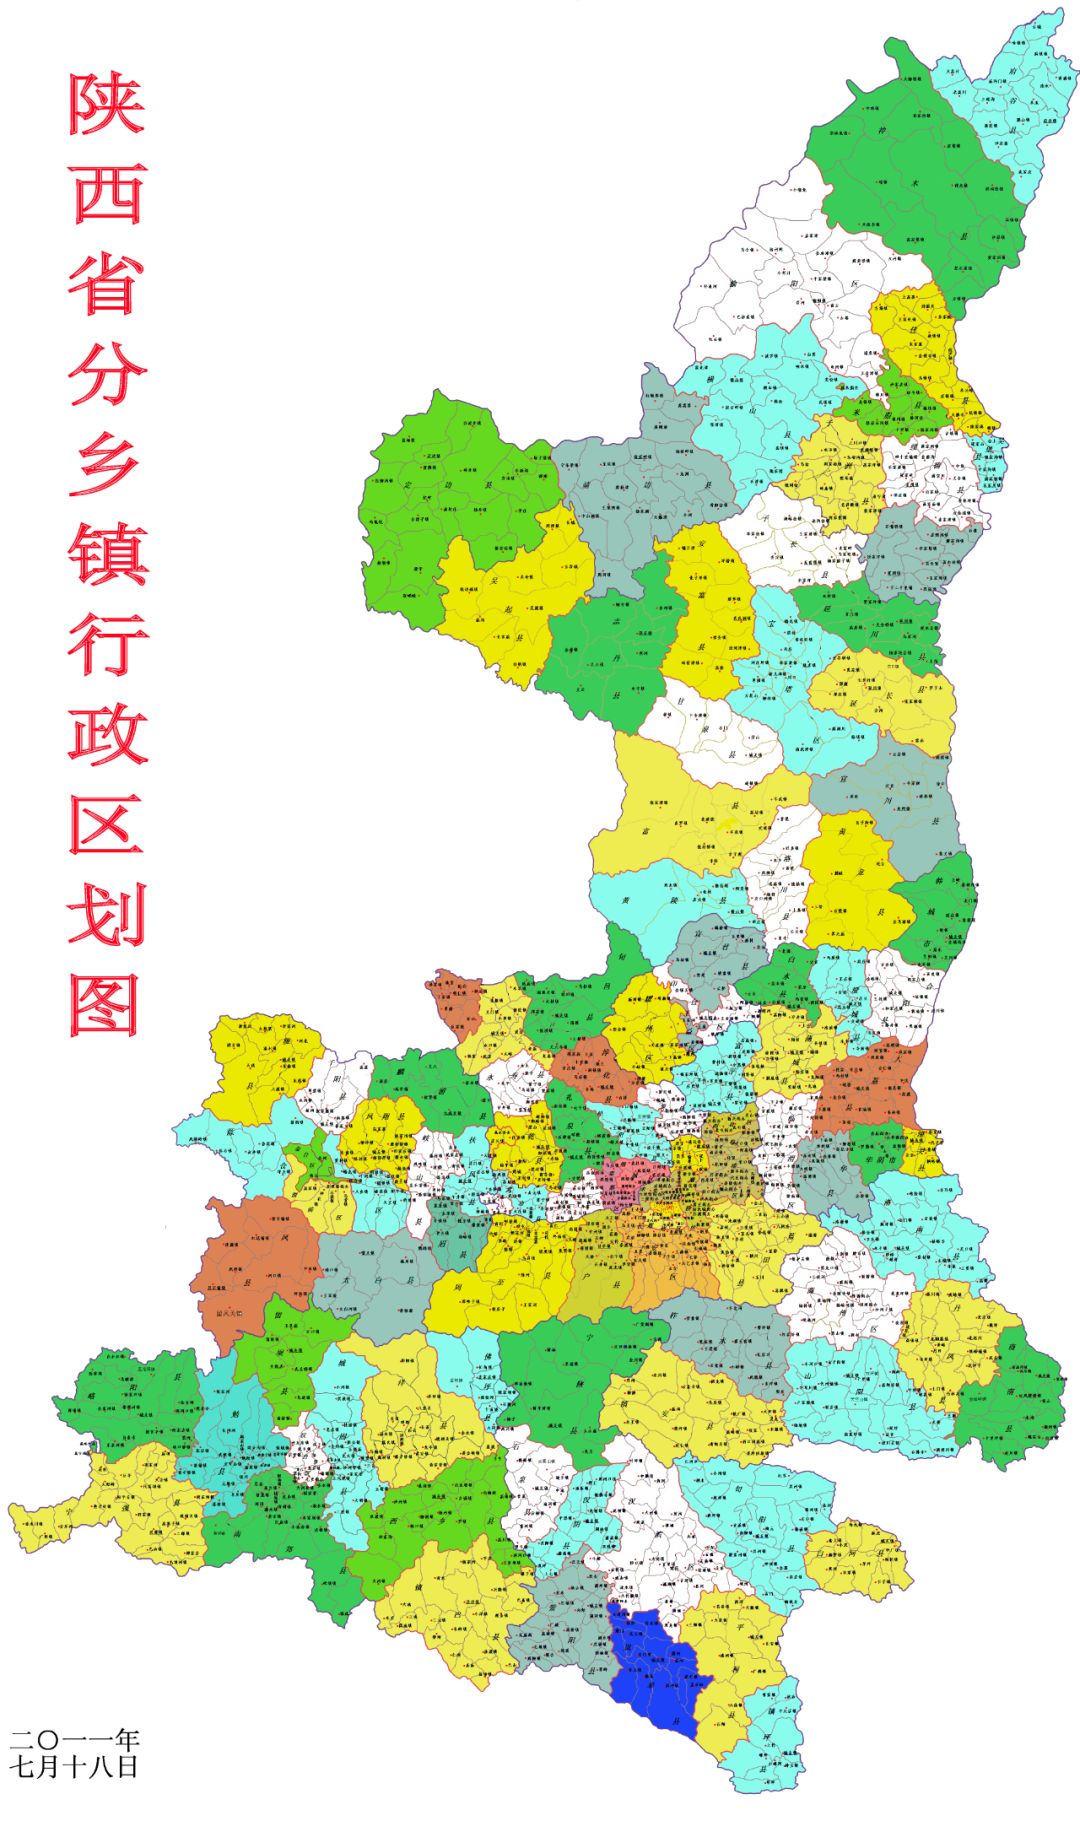 11幅陕西省各类高清地图绝对养眼漂亮现在不看也要先下载下来收藏